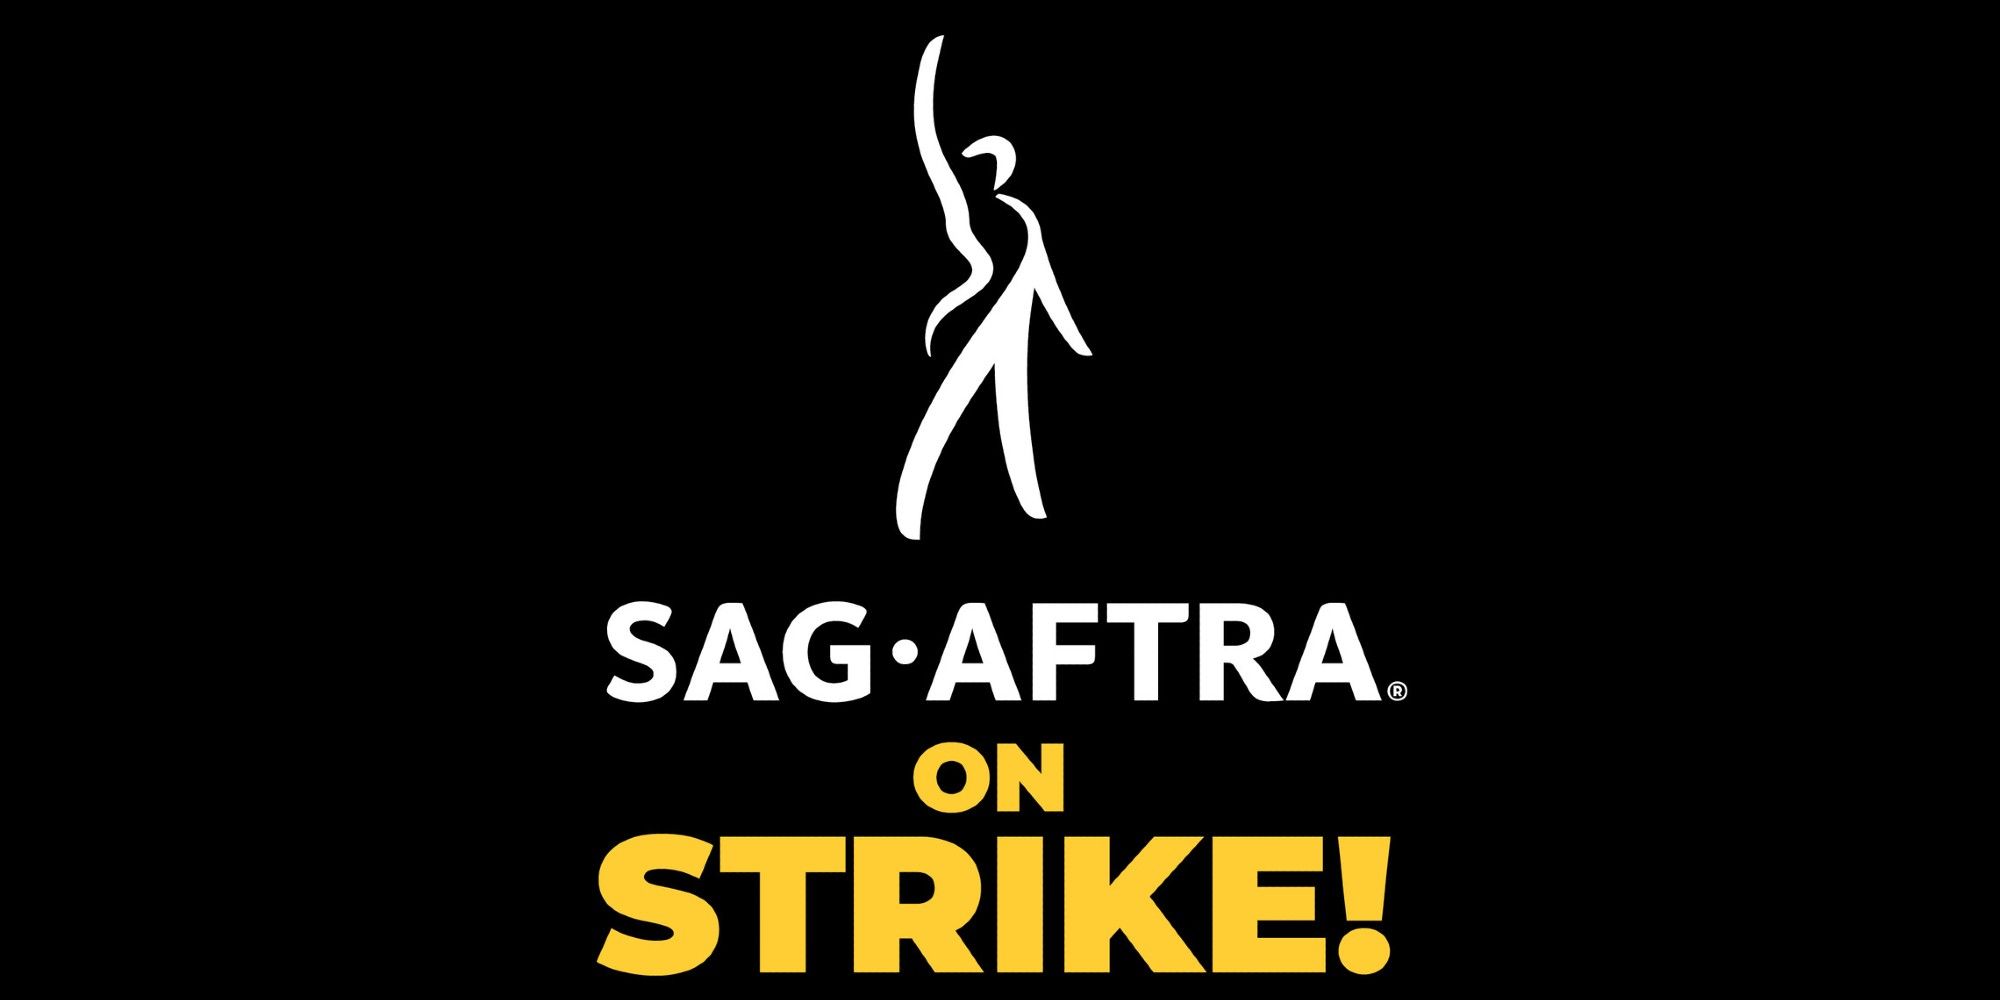 La huelga de actores para que continúe la remuneración justa mientras las negociaciones colapsan, SAG y AMPTP publican declaraciones